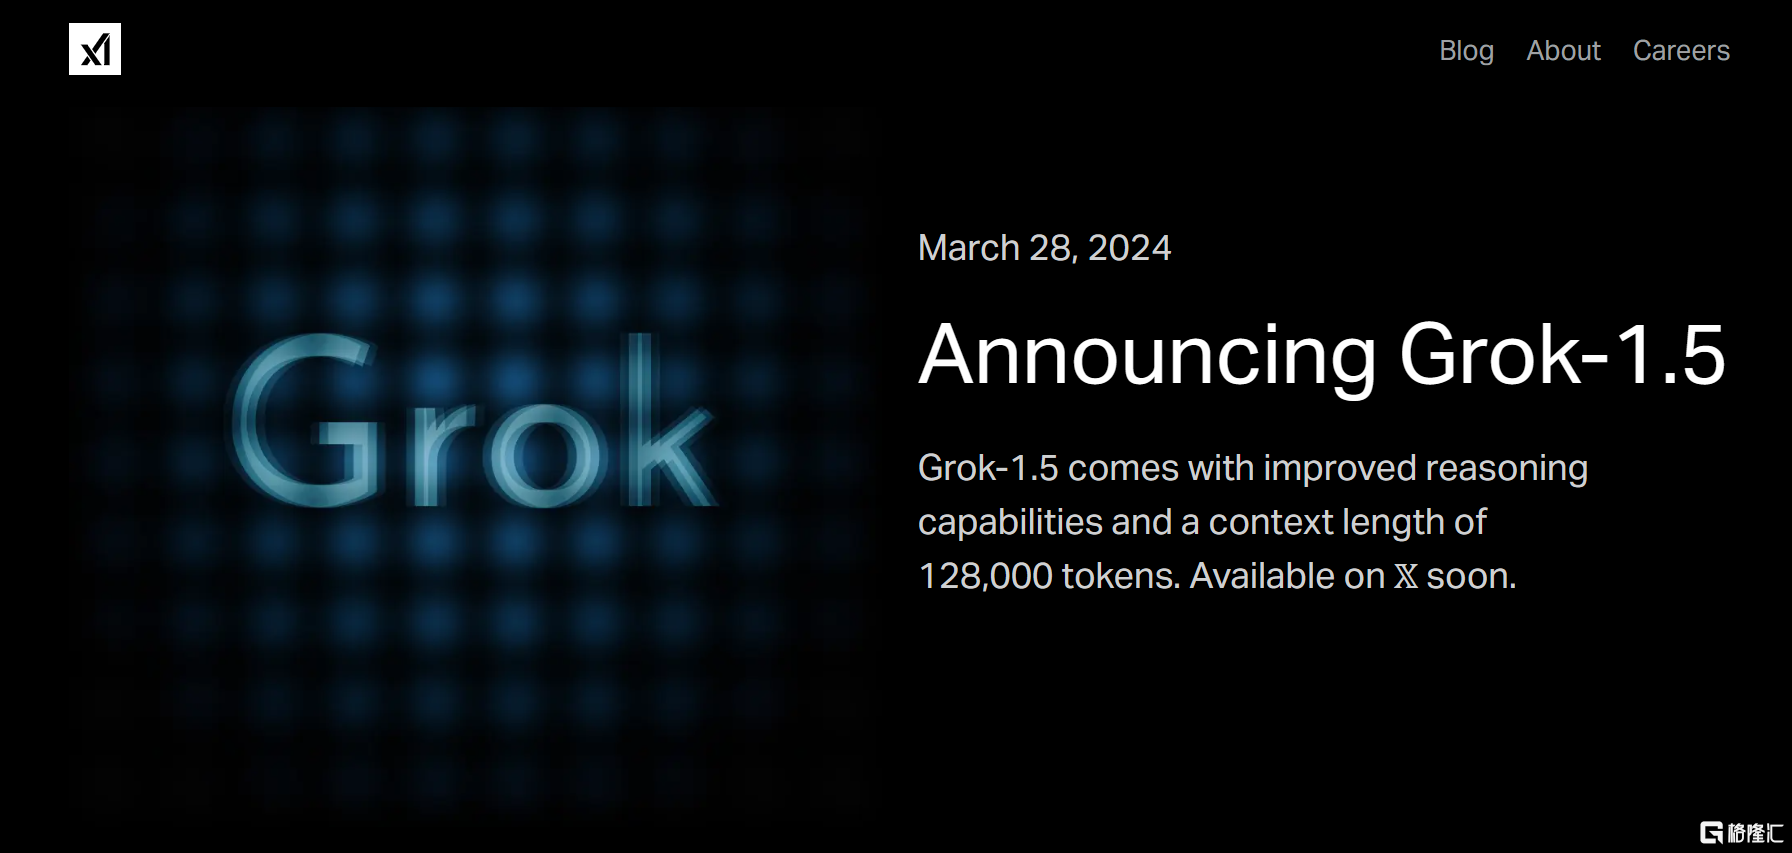 马斯克最新预告！Grok1.5增强版下周上线，Grok2 将超过当前的AI？